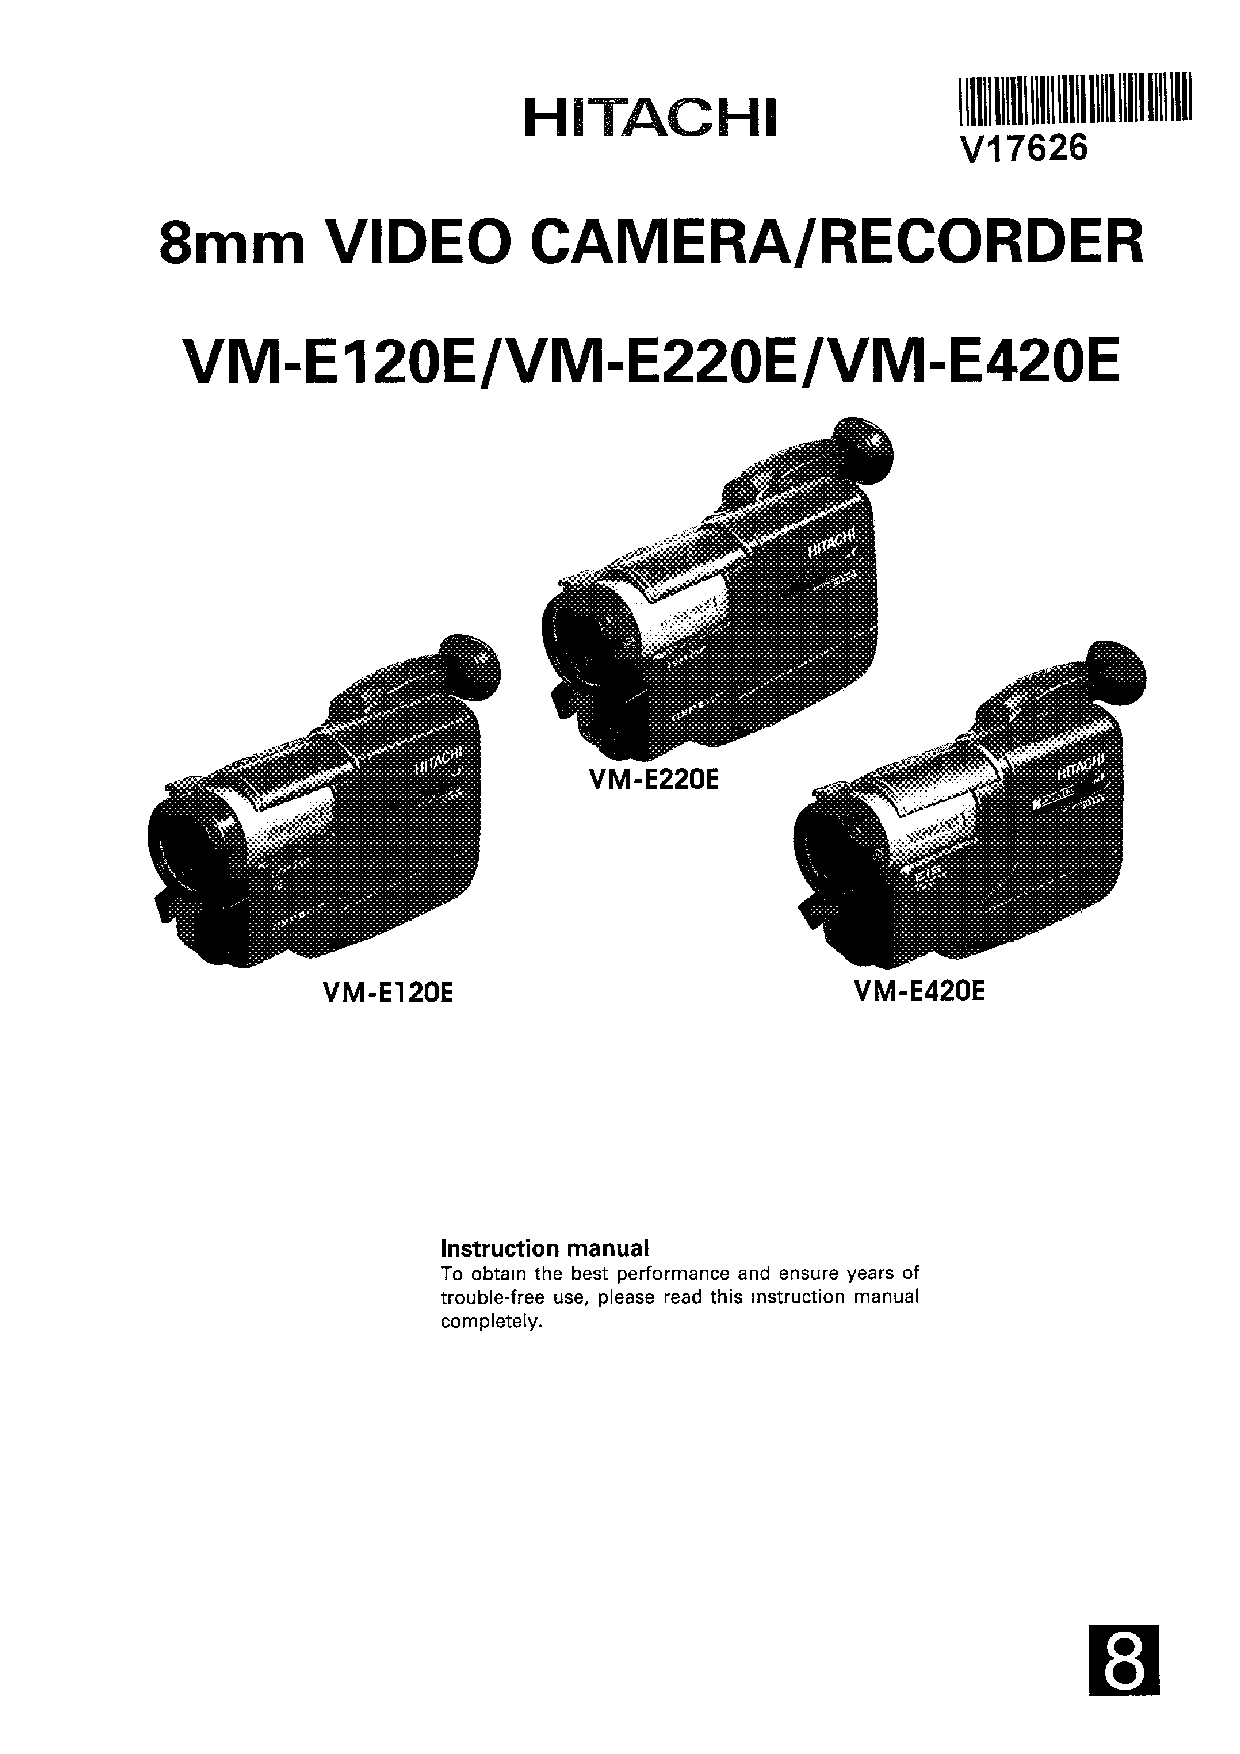 Hitachi VME420E, VME220E, VME120E User Manual